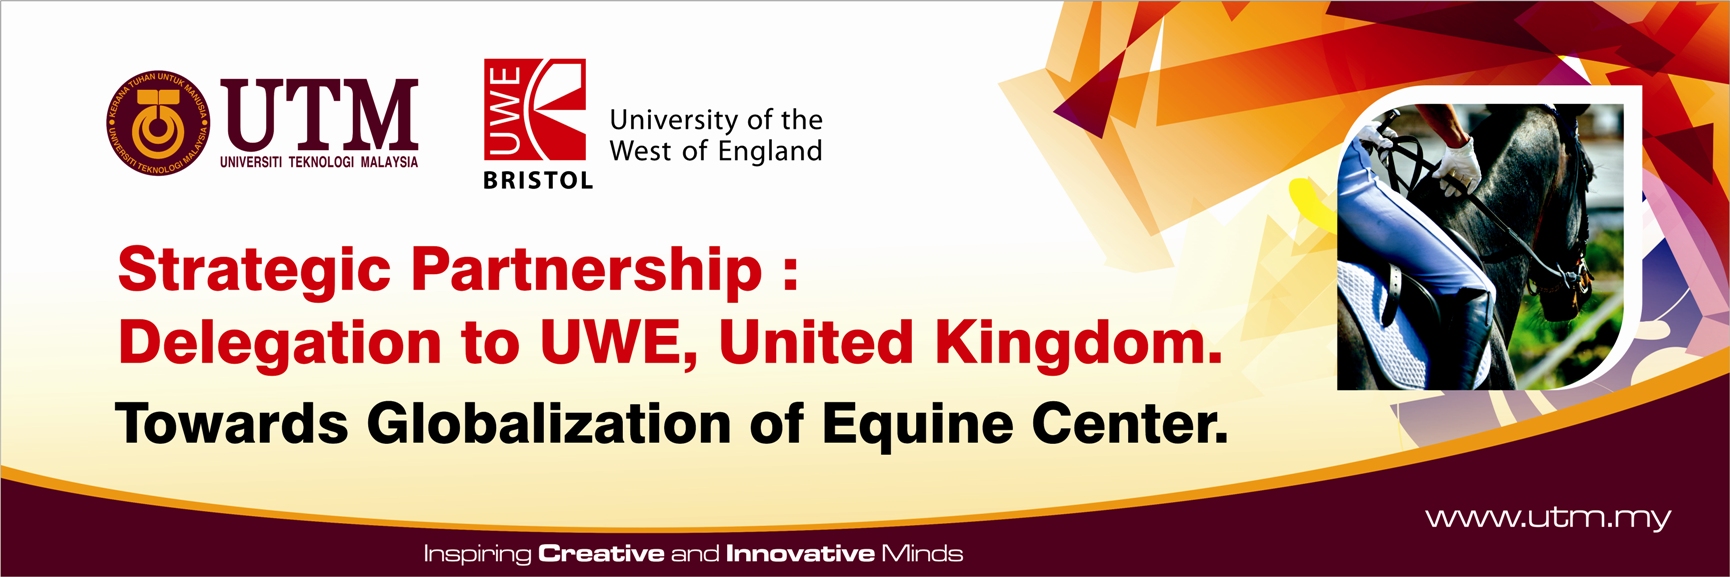 Strategic Partnership: Delegation to UWE, United Kingdom